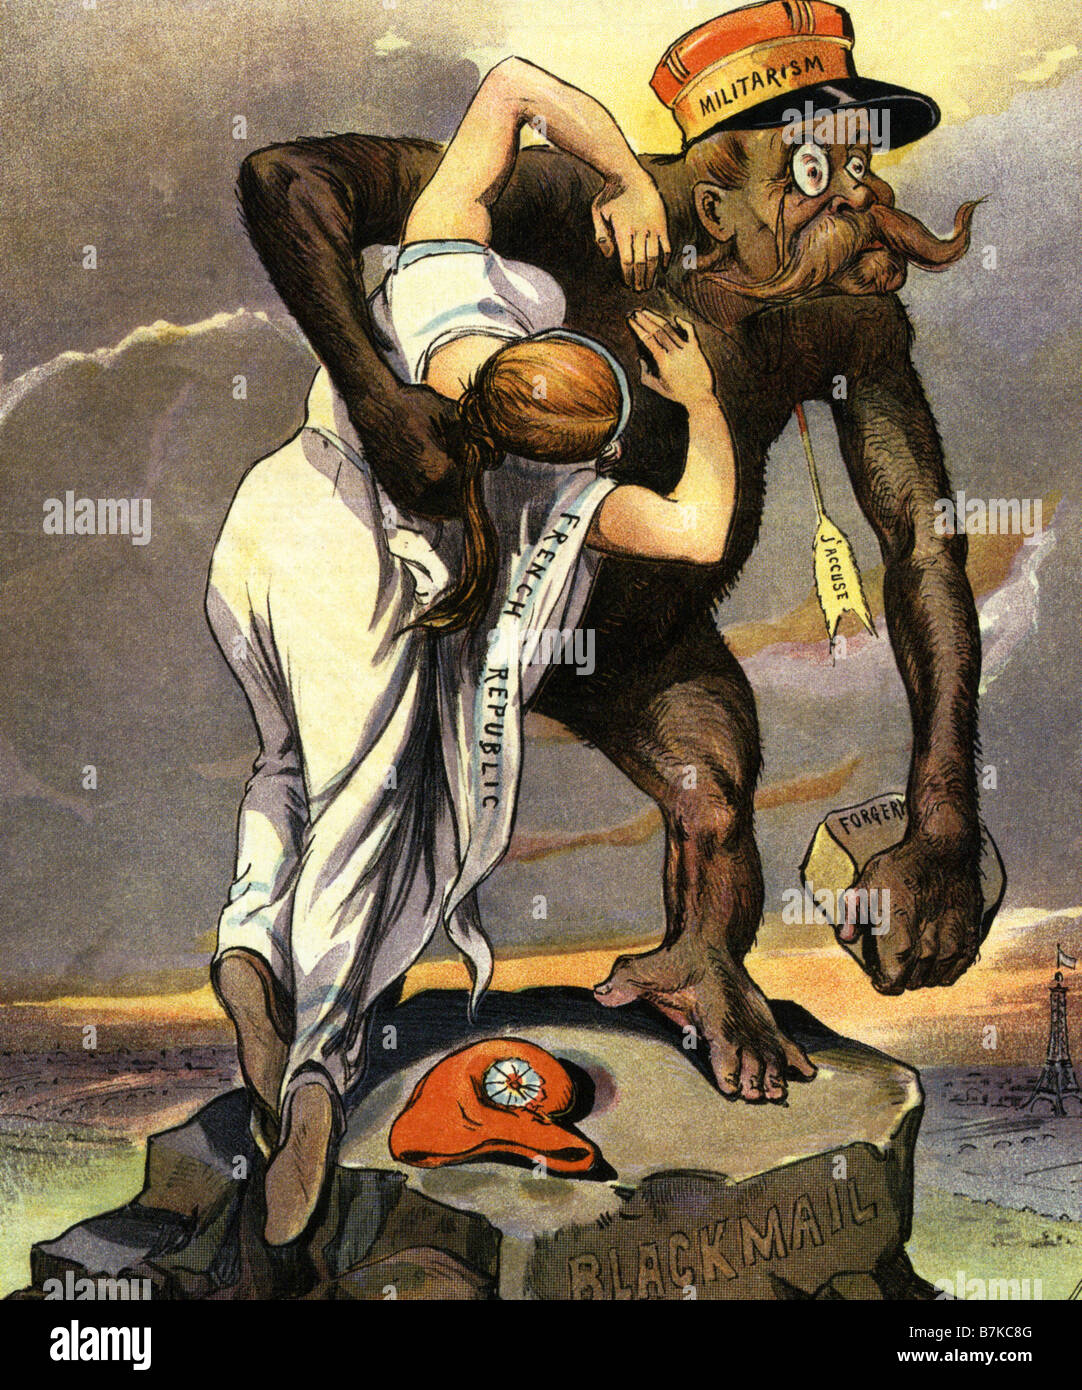 L'AFFAIRE DREYFUS, un dessin animé français ridiculisant l'abus de droit dans l'affaire contre Alfred Dreyfus en 1893-4 Banque D'Images